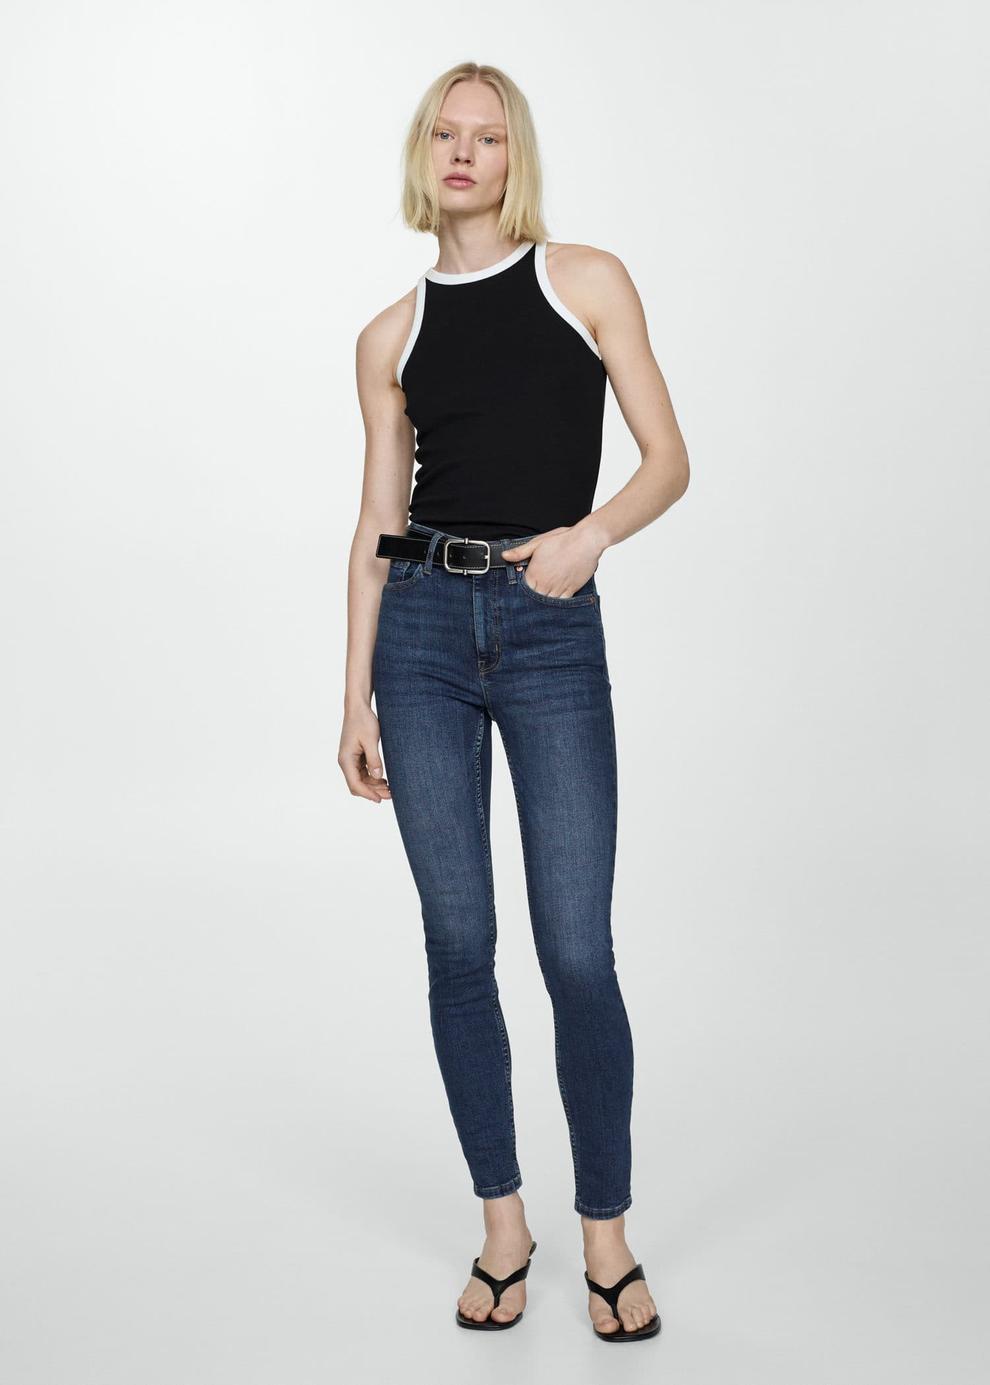 High-rise skinny jeans v akcii za 22,99€ v Mango